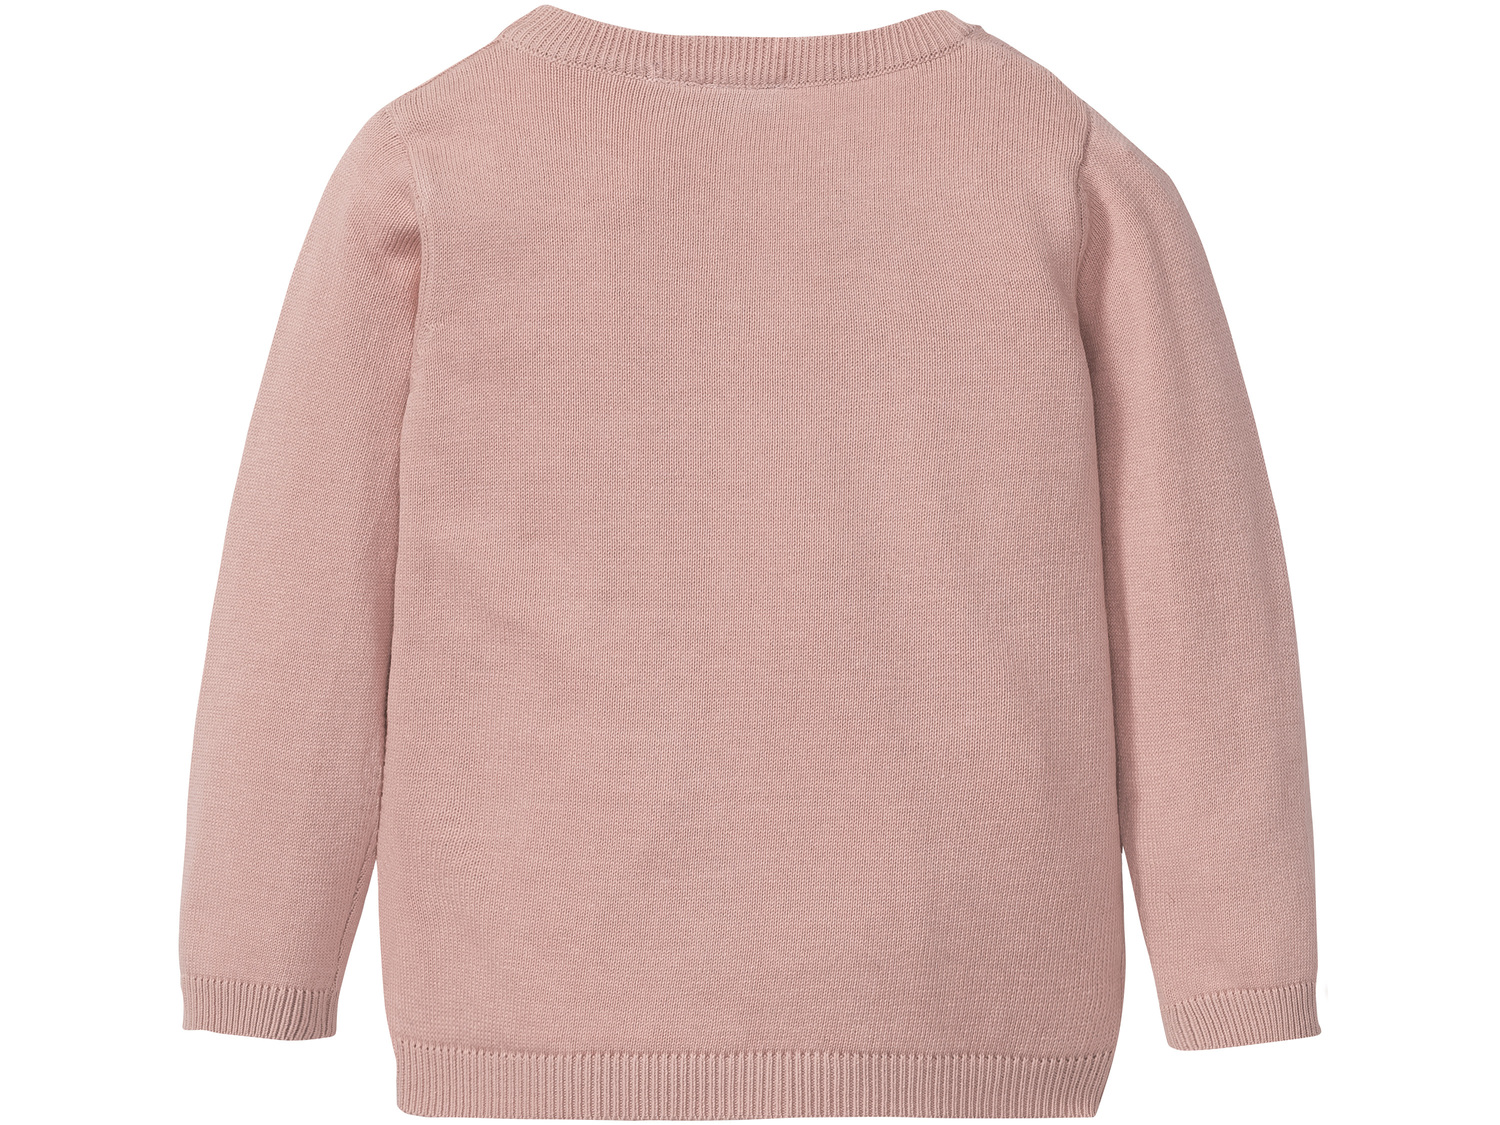 Sweter Lupilu, cena 21,99 &#8364; 
- 100% bawełny
- błyszczący nadruk
- rozmiary: ...